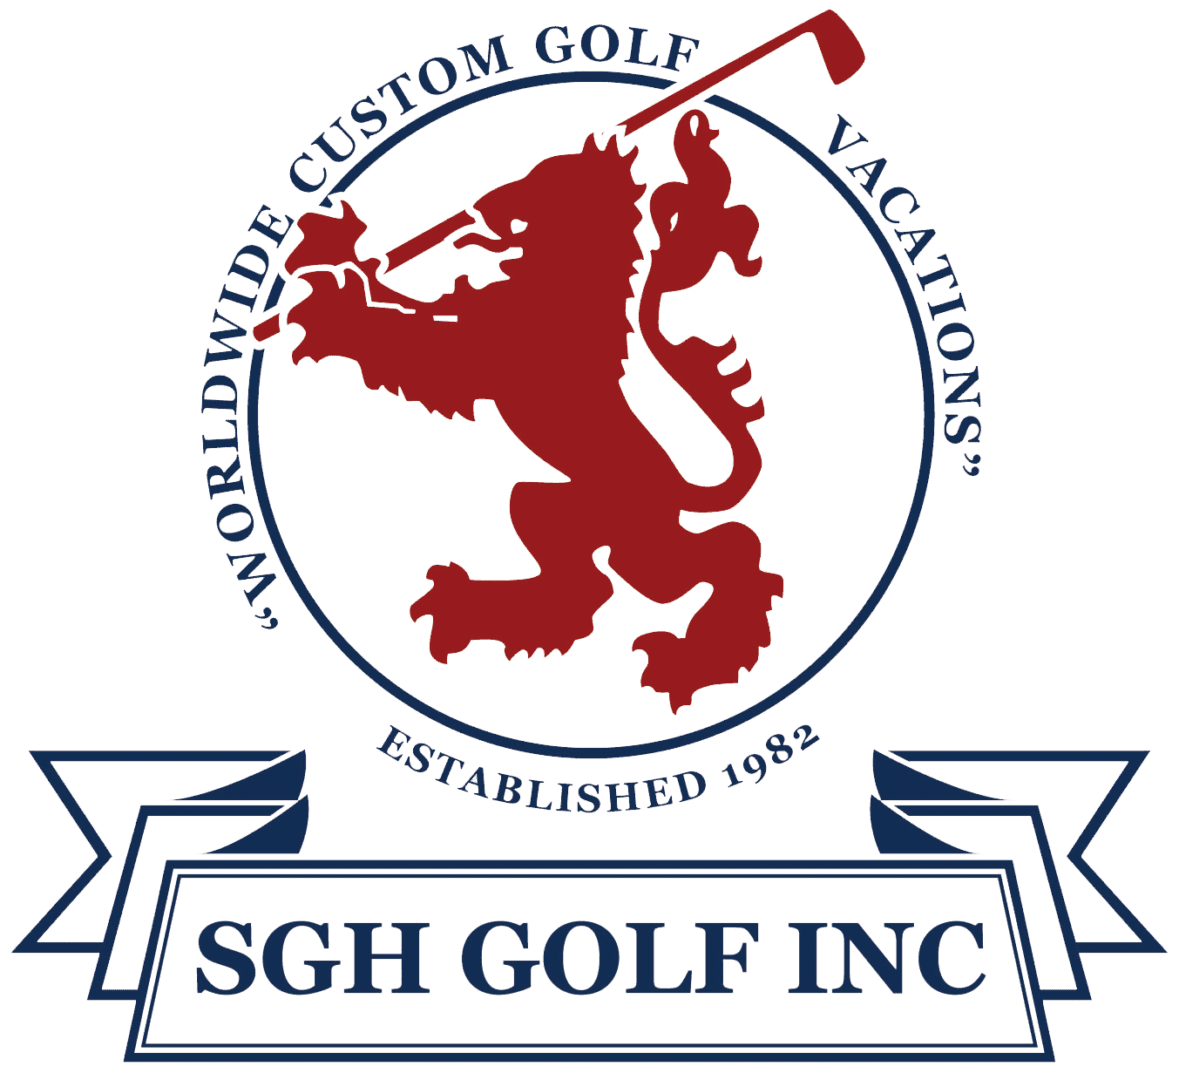 SGH Golf